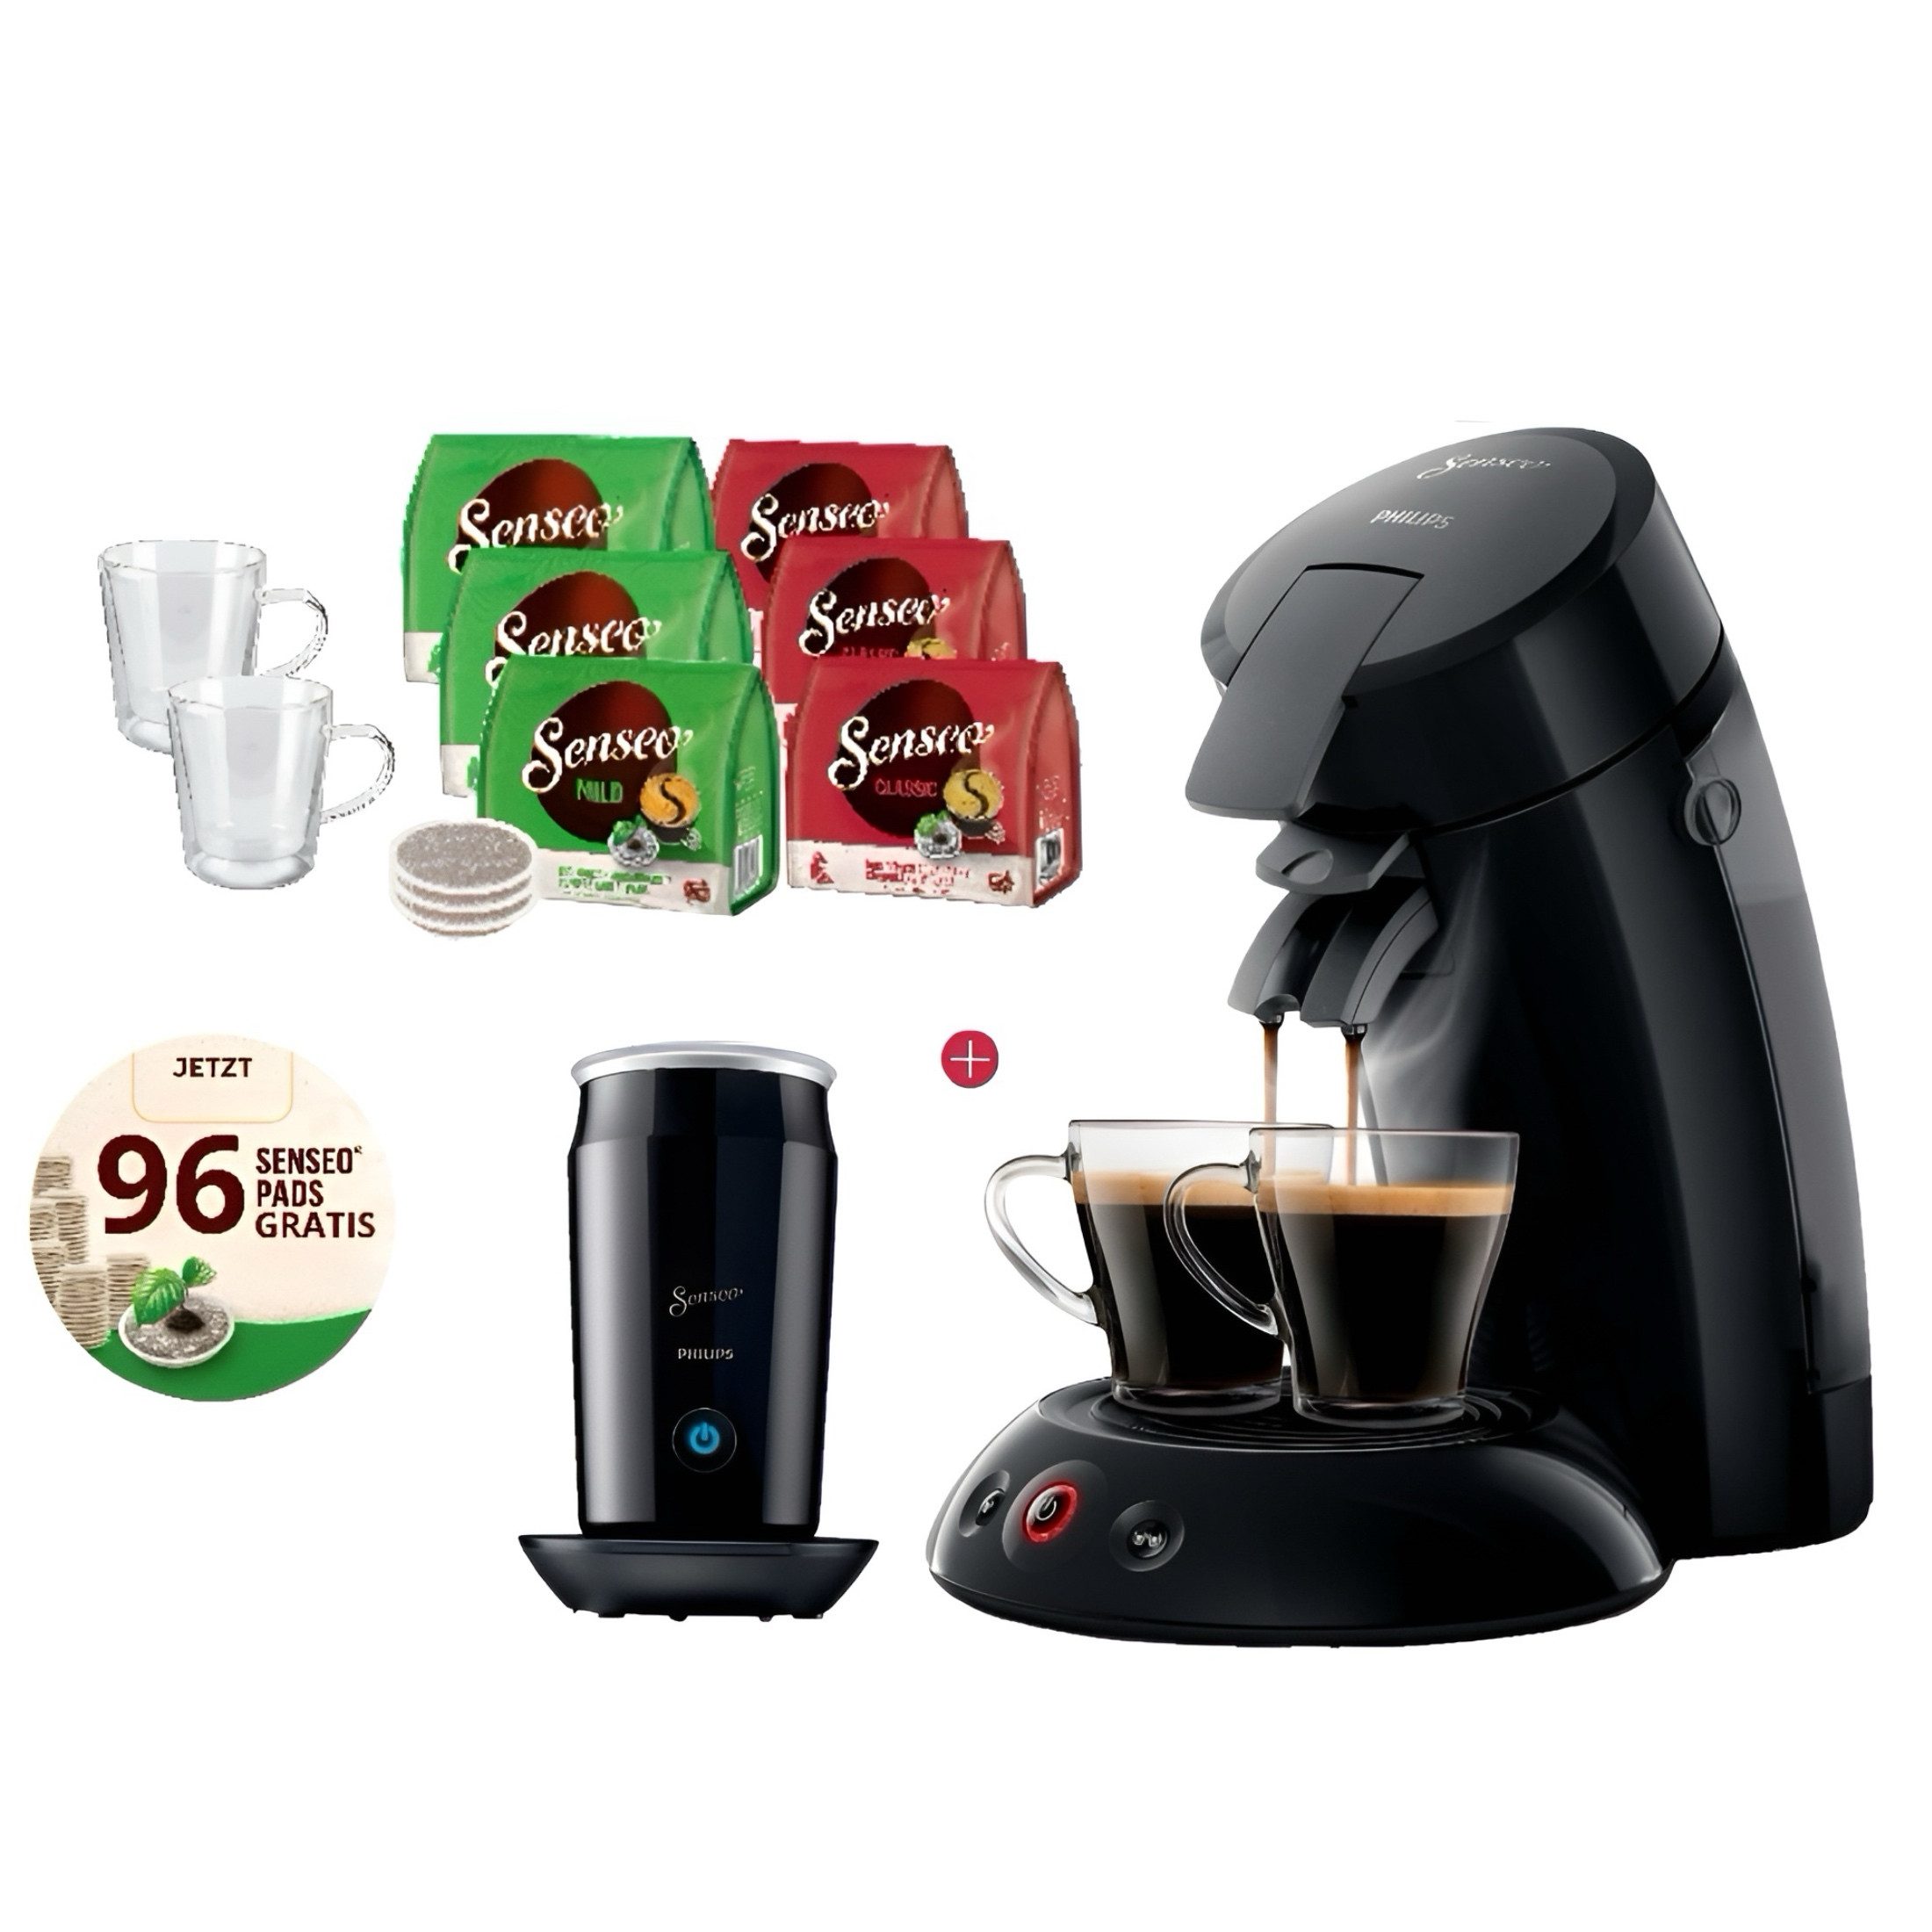 Philips Senseo Kapsel-/Kaffeepadmaschine Kaffeemaschine mit Milchaufschäumer + 96 Kaffeepads 2 Gläser Gratis, 0,7l Kaffeekanne, Edelsthalfilter, Magnetisches Aufschäumen, Kaffee Boost und Crema Plus Technologien, Doppelte Kaffeezubereitung